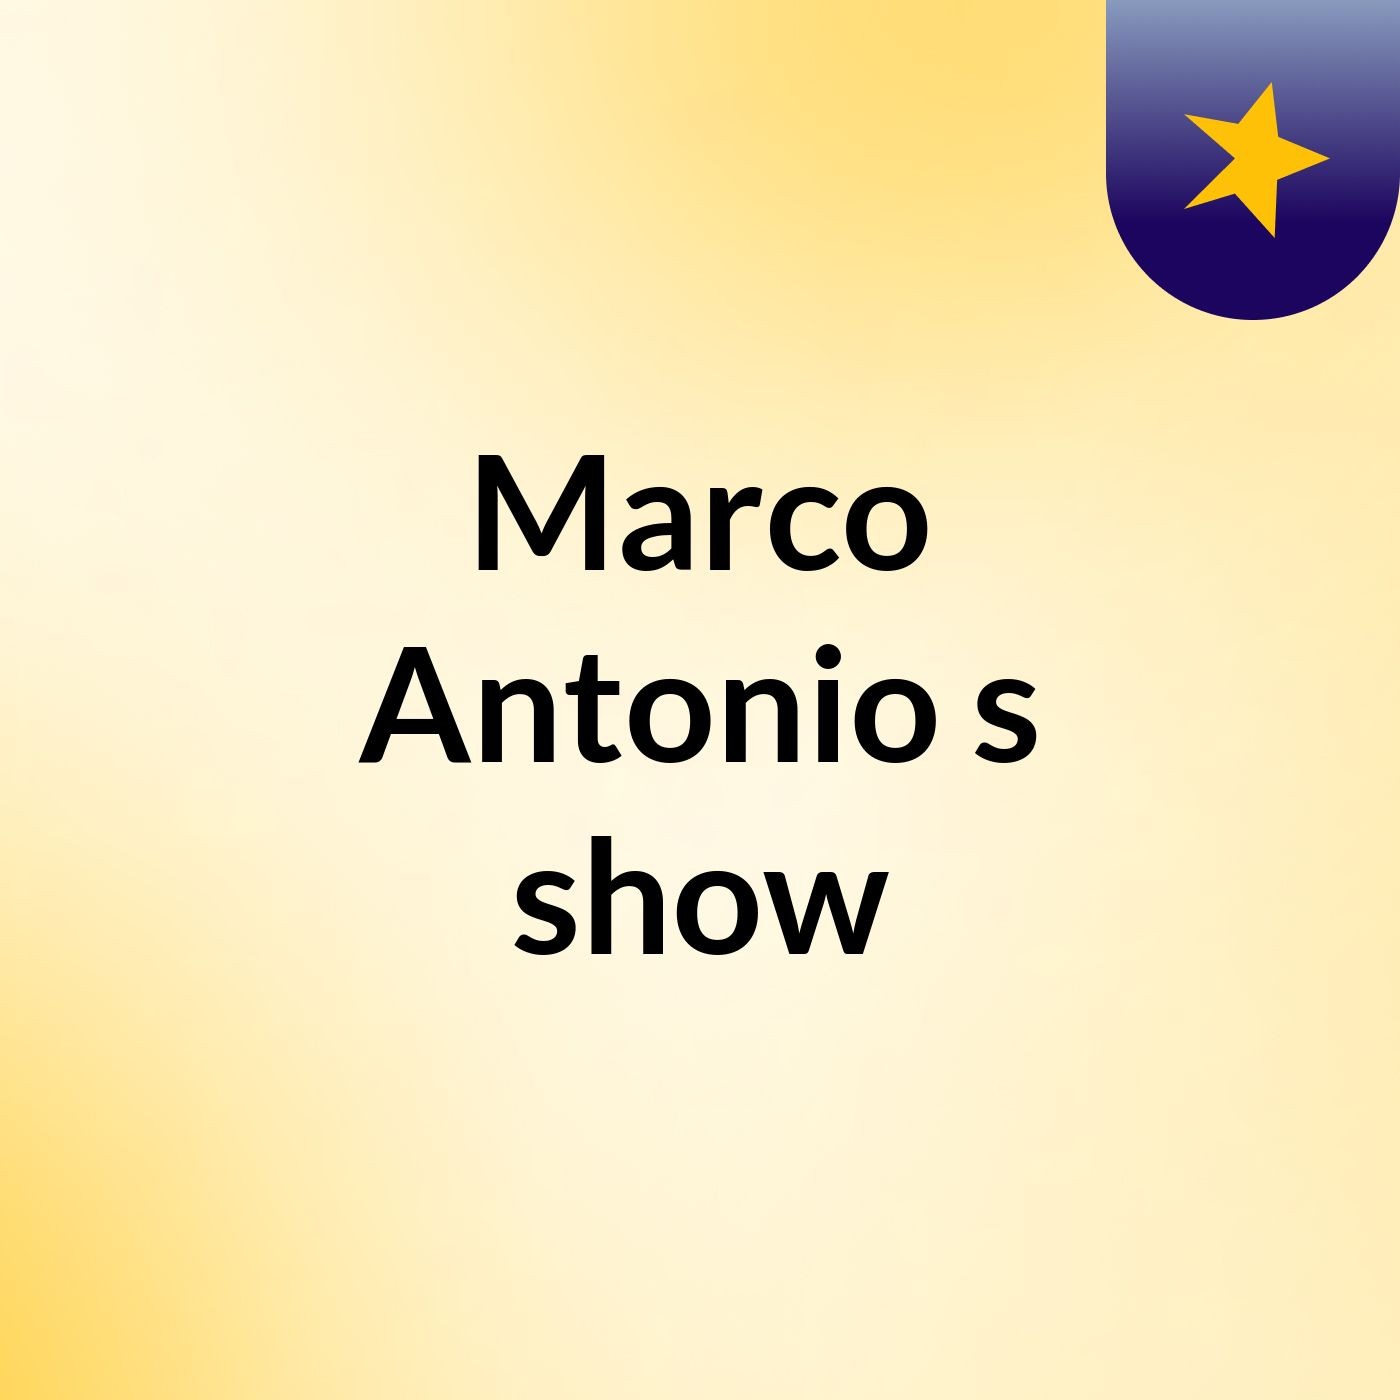 Marco Antonio's show